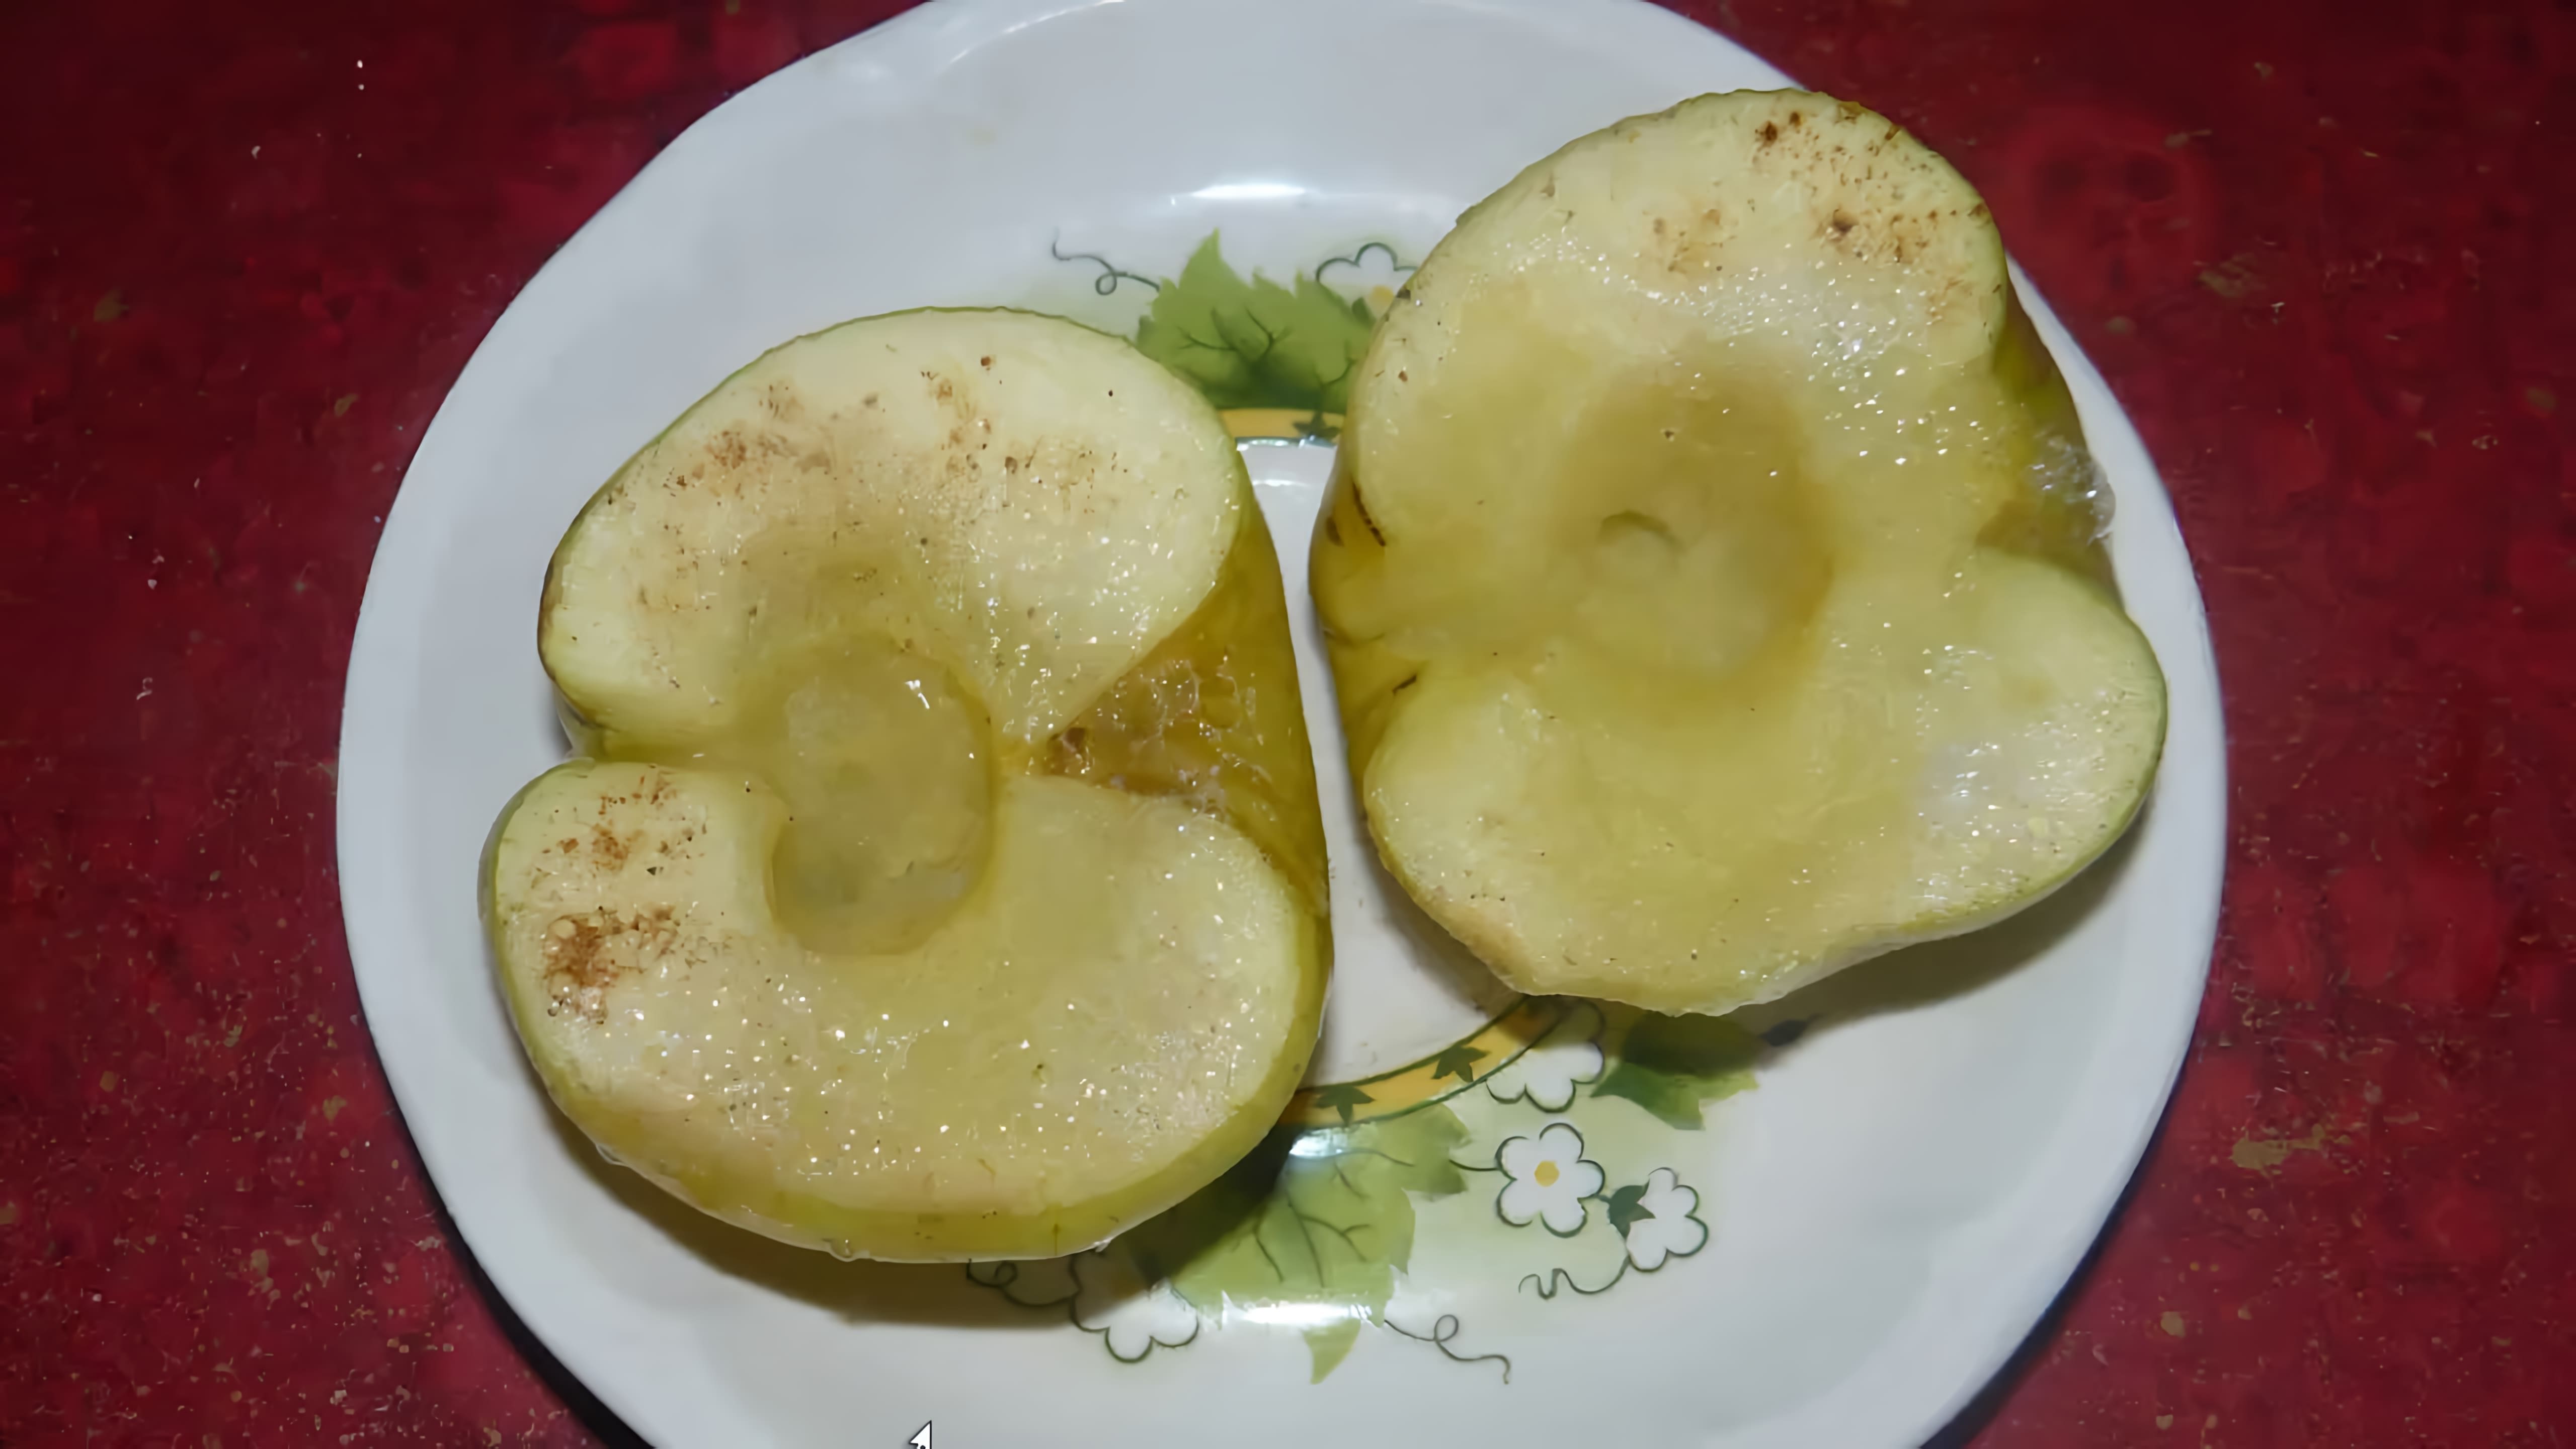 В этом видео демонстрируется простой и быстрый рецепт приготовления печеных яблок в микроволновке